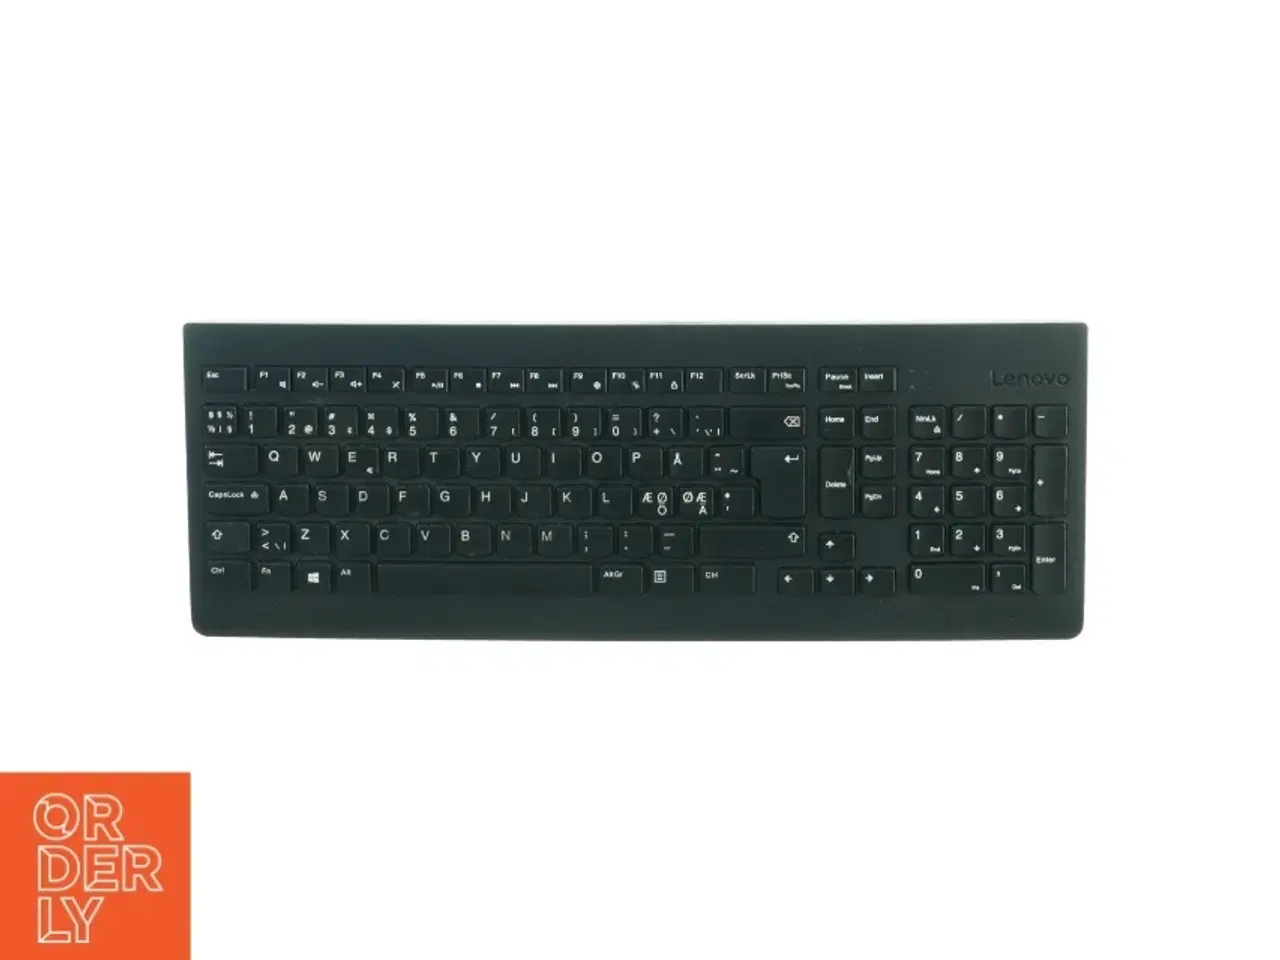 Billede 1 - Keyboard fra Lenovo (str. 42 x 16 cm)